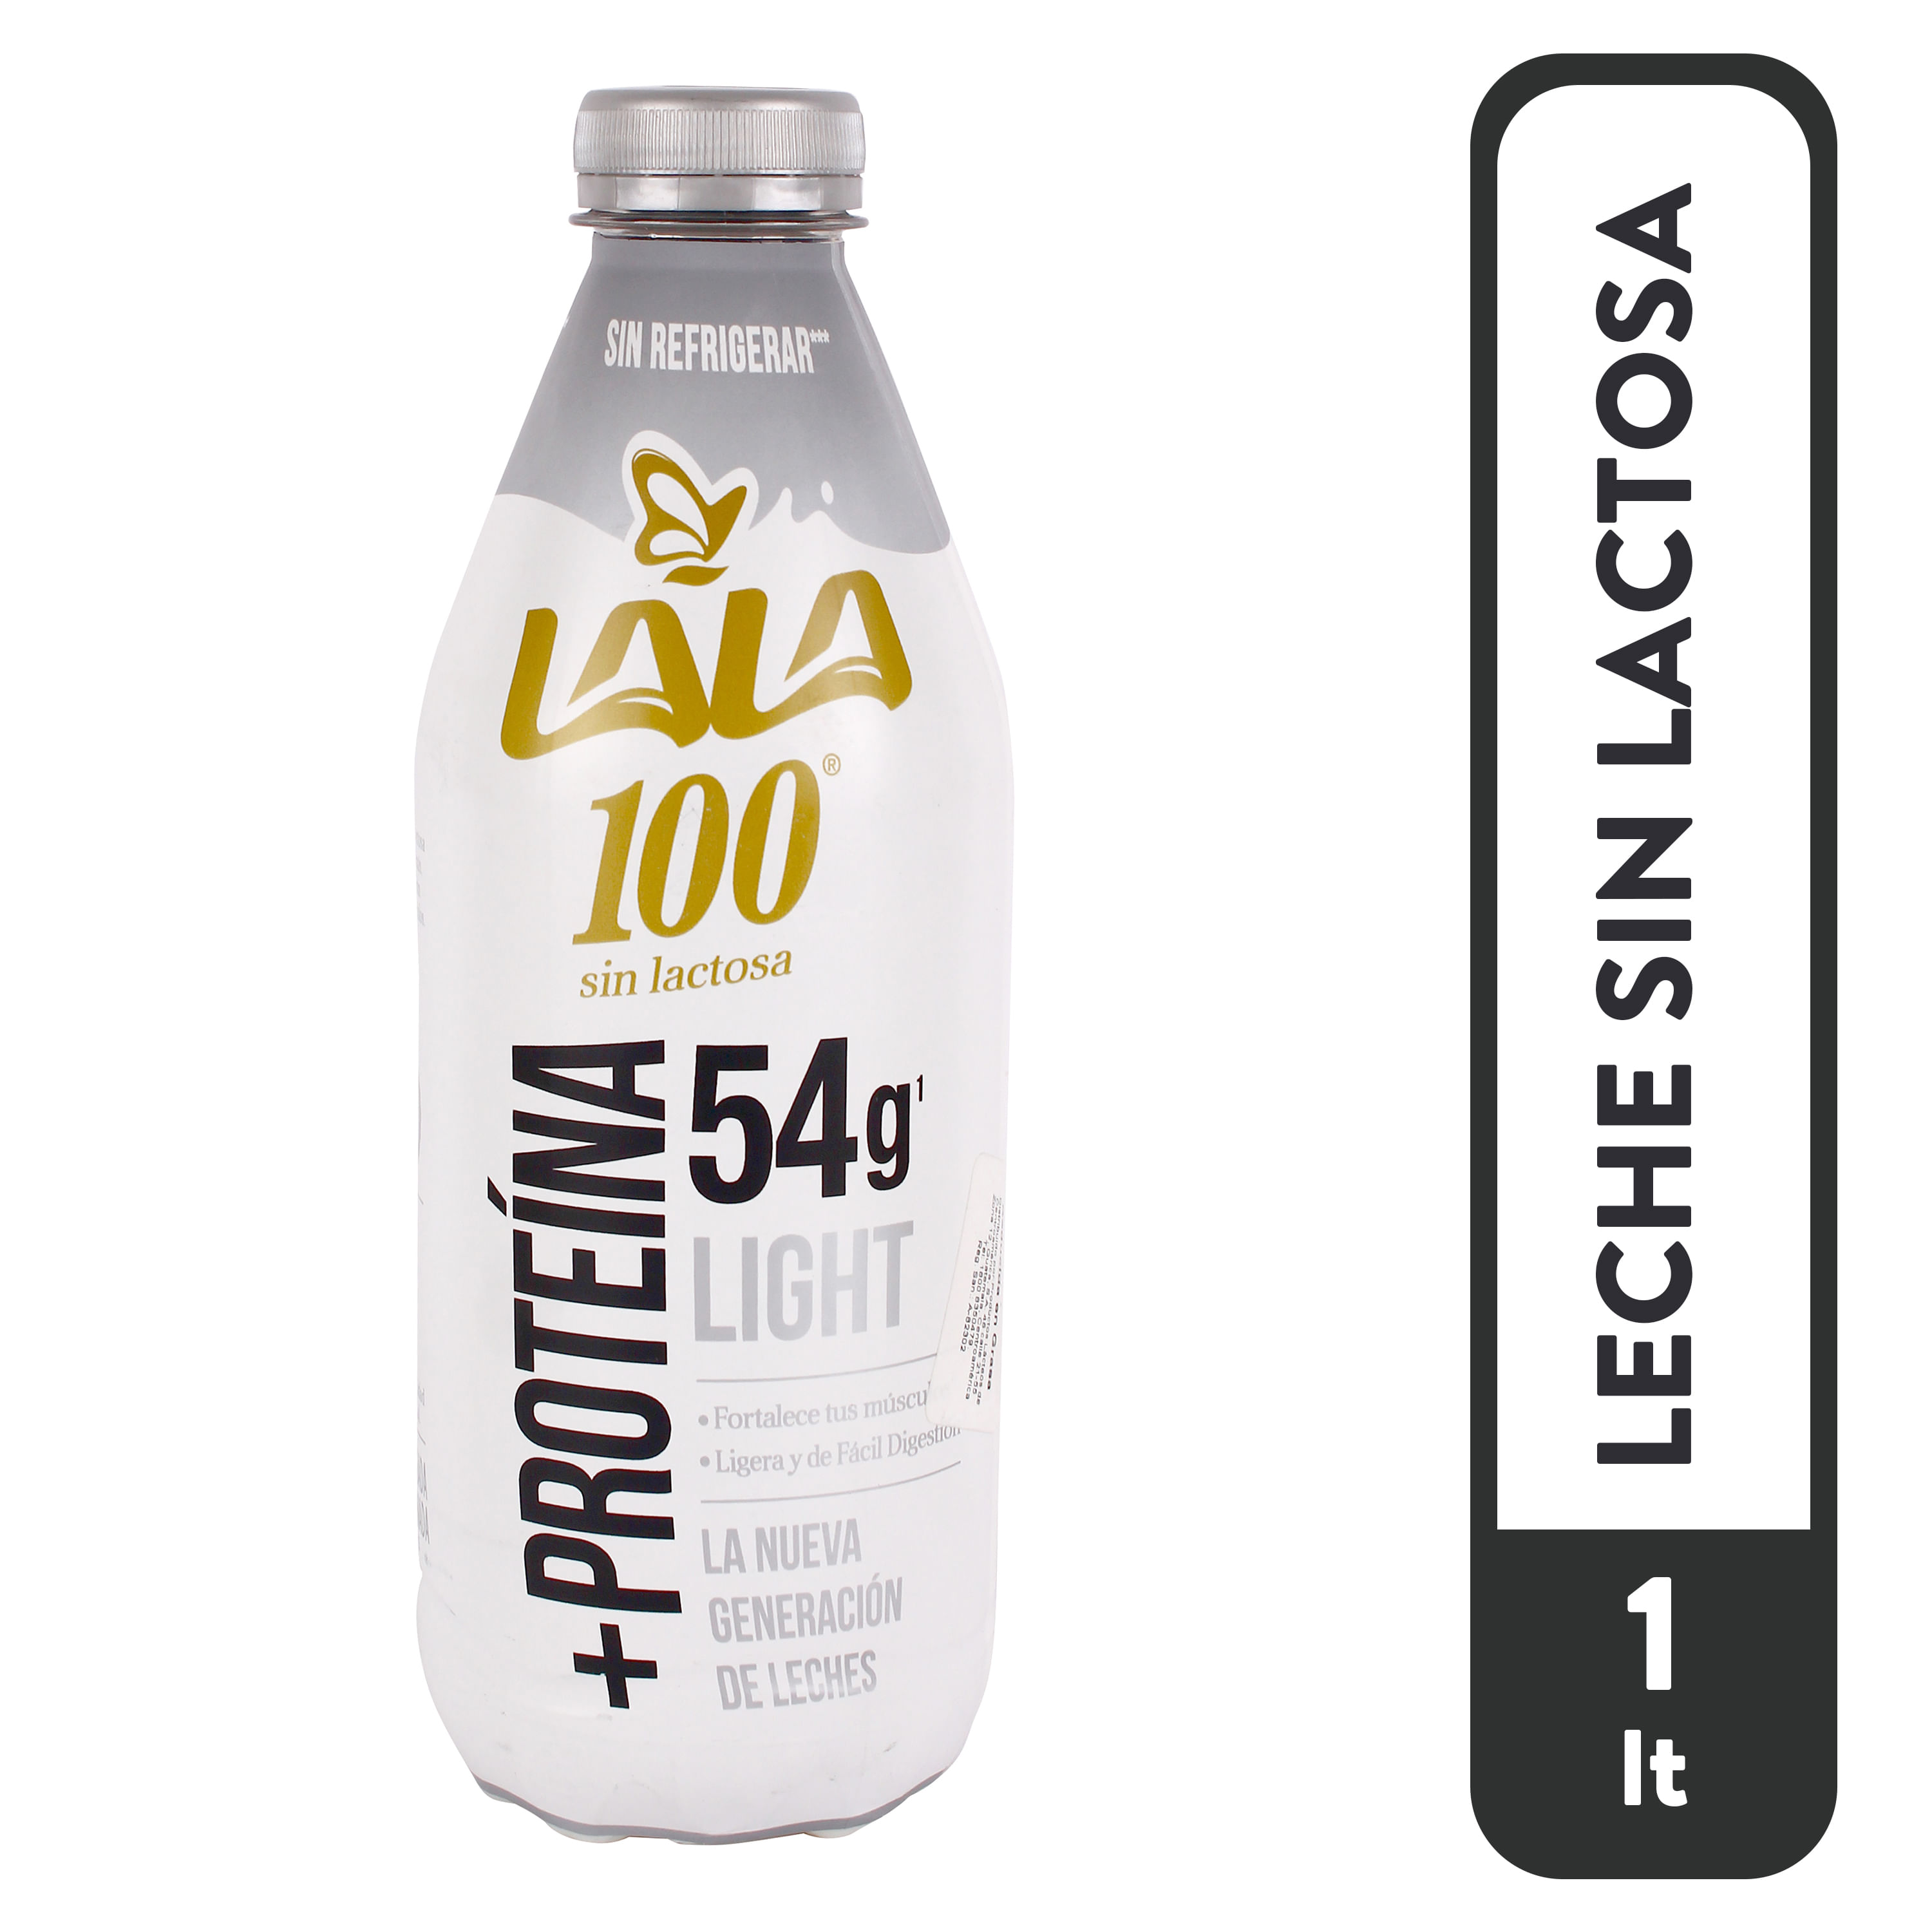 Comprar Leche Lala 100® Sin Lactosa Reducida en Grasa - 1000ml